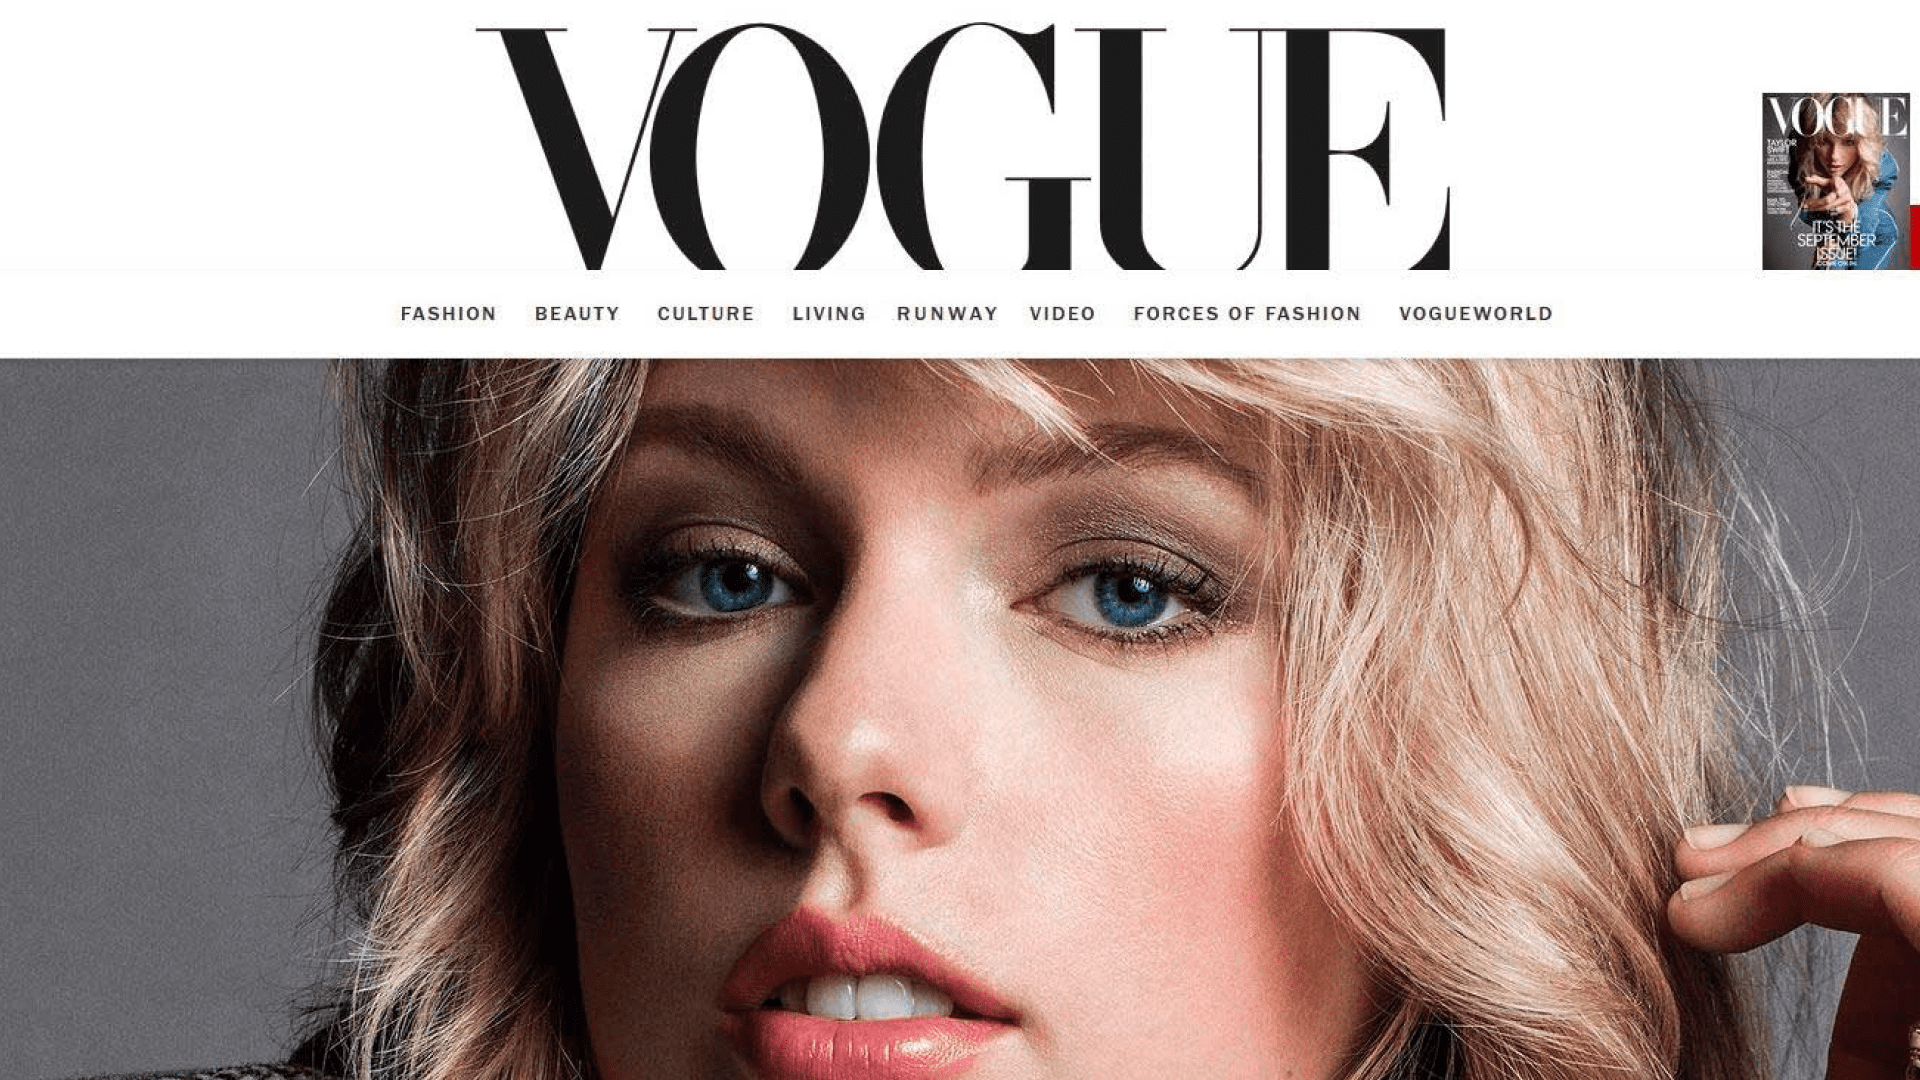 Конде насте. Страницы журнала Вог. Страницы из журнала Vogue. Заголовки журнала Вог. Разворот журнала Vogue.